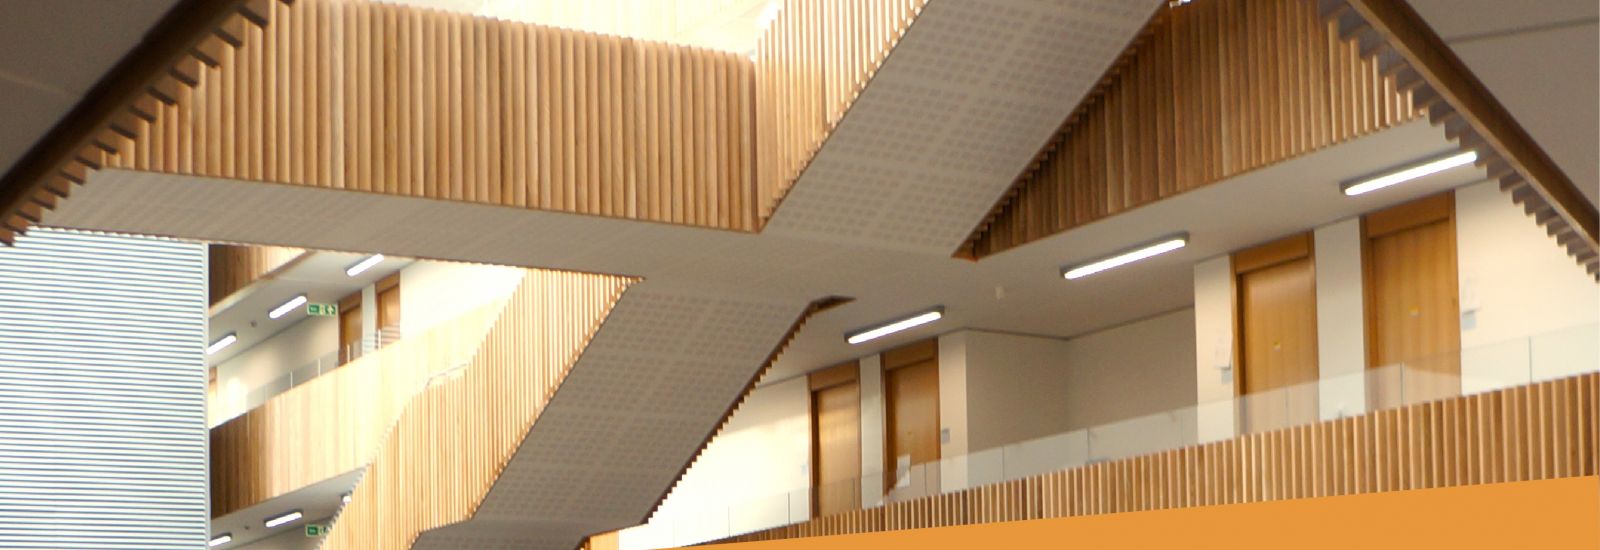 The interior of the Mathematics Institute